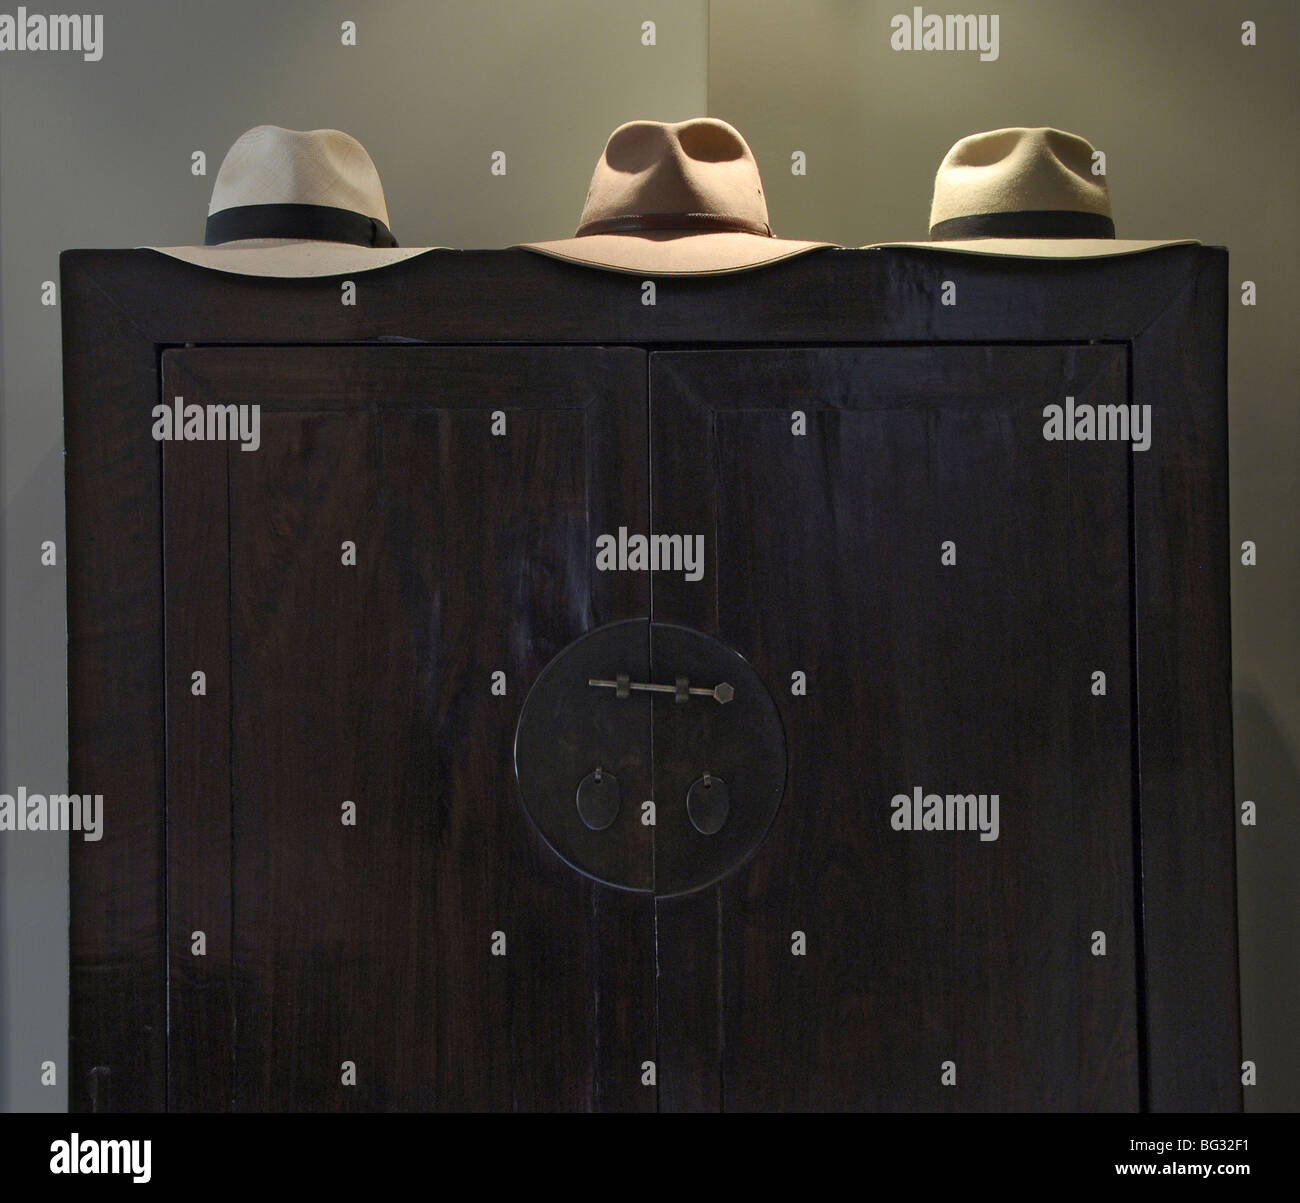 Diese drei Hüte auf dem alten Schrank, drei Phasen zu vertreten schien ein mans Leben. Stockfoto